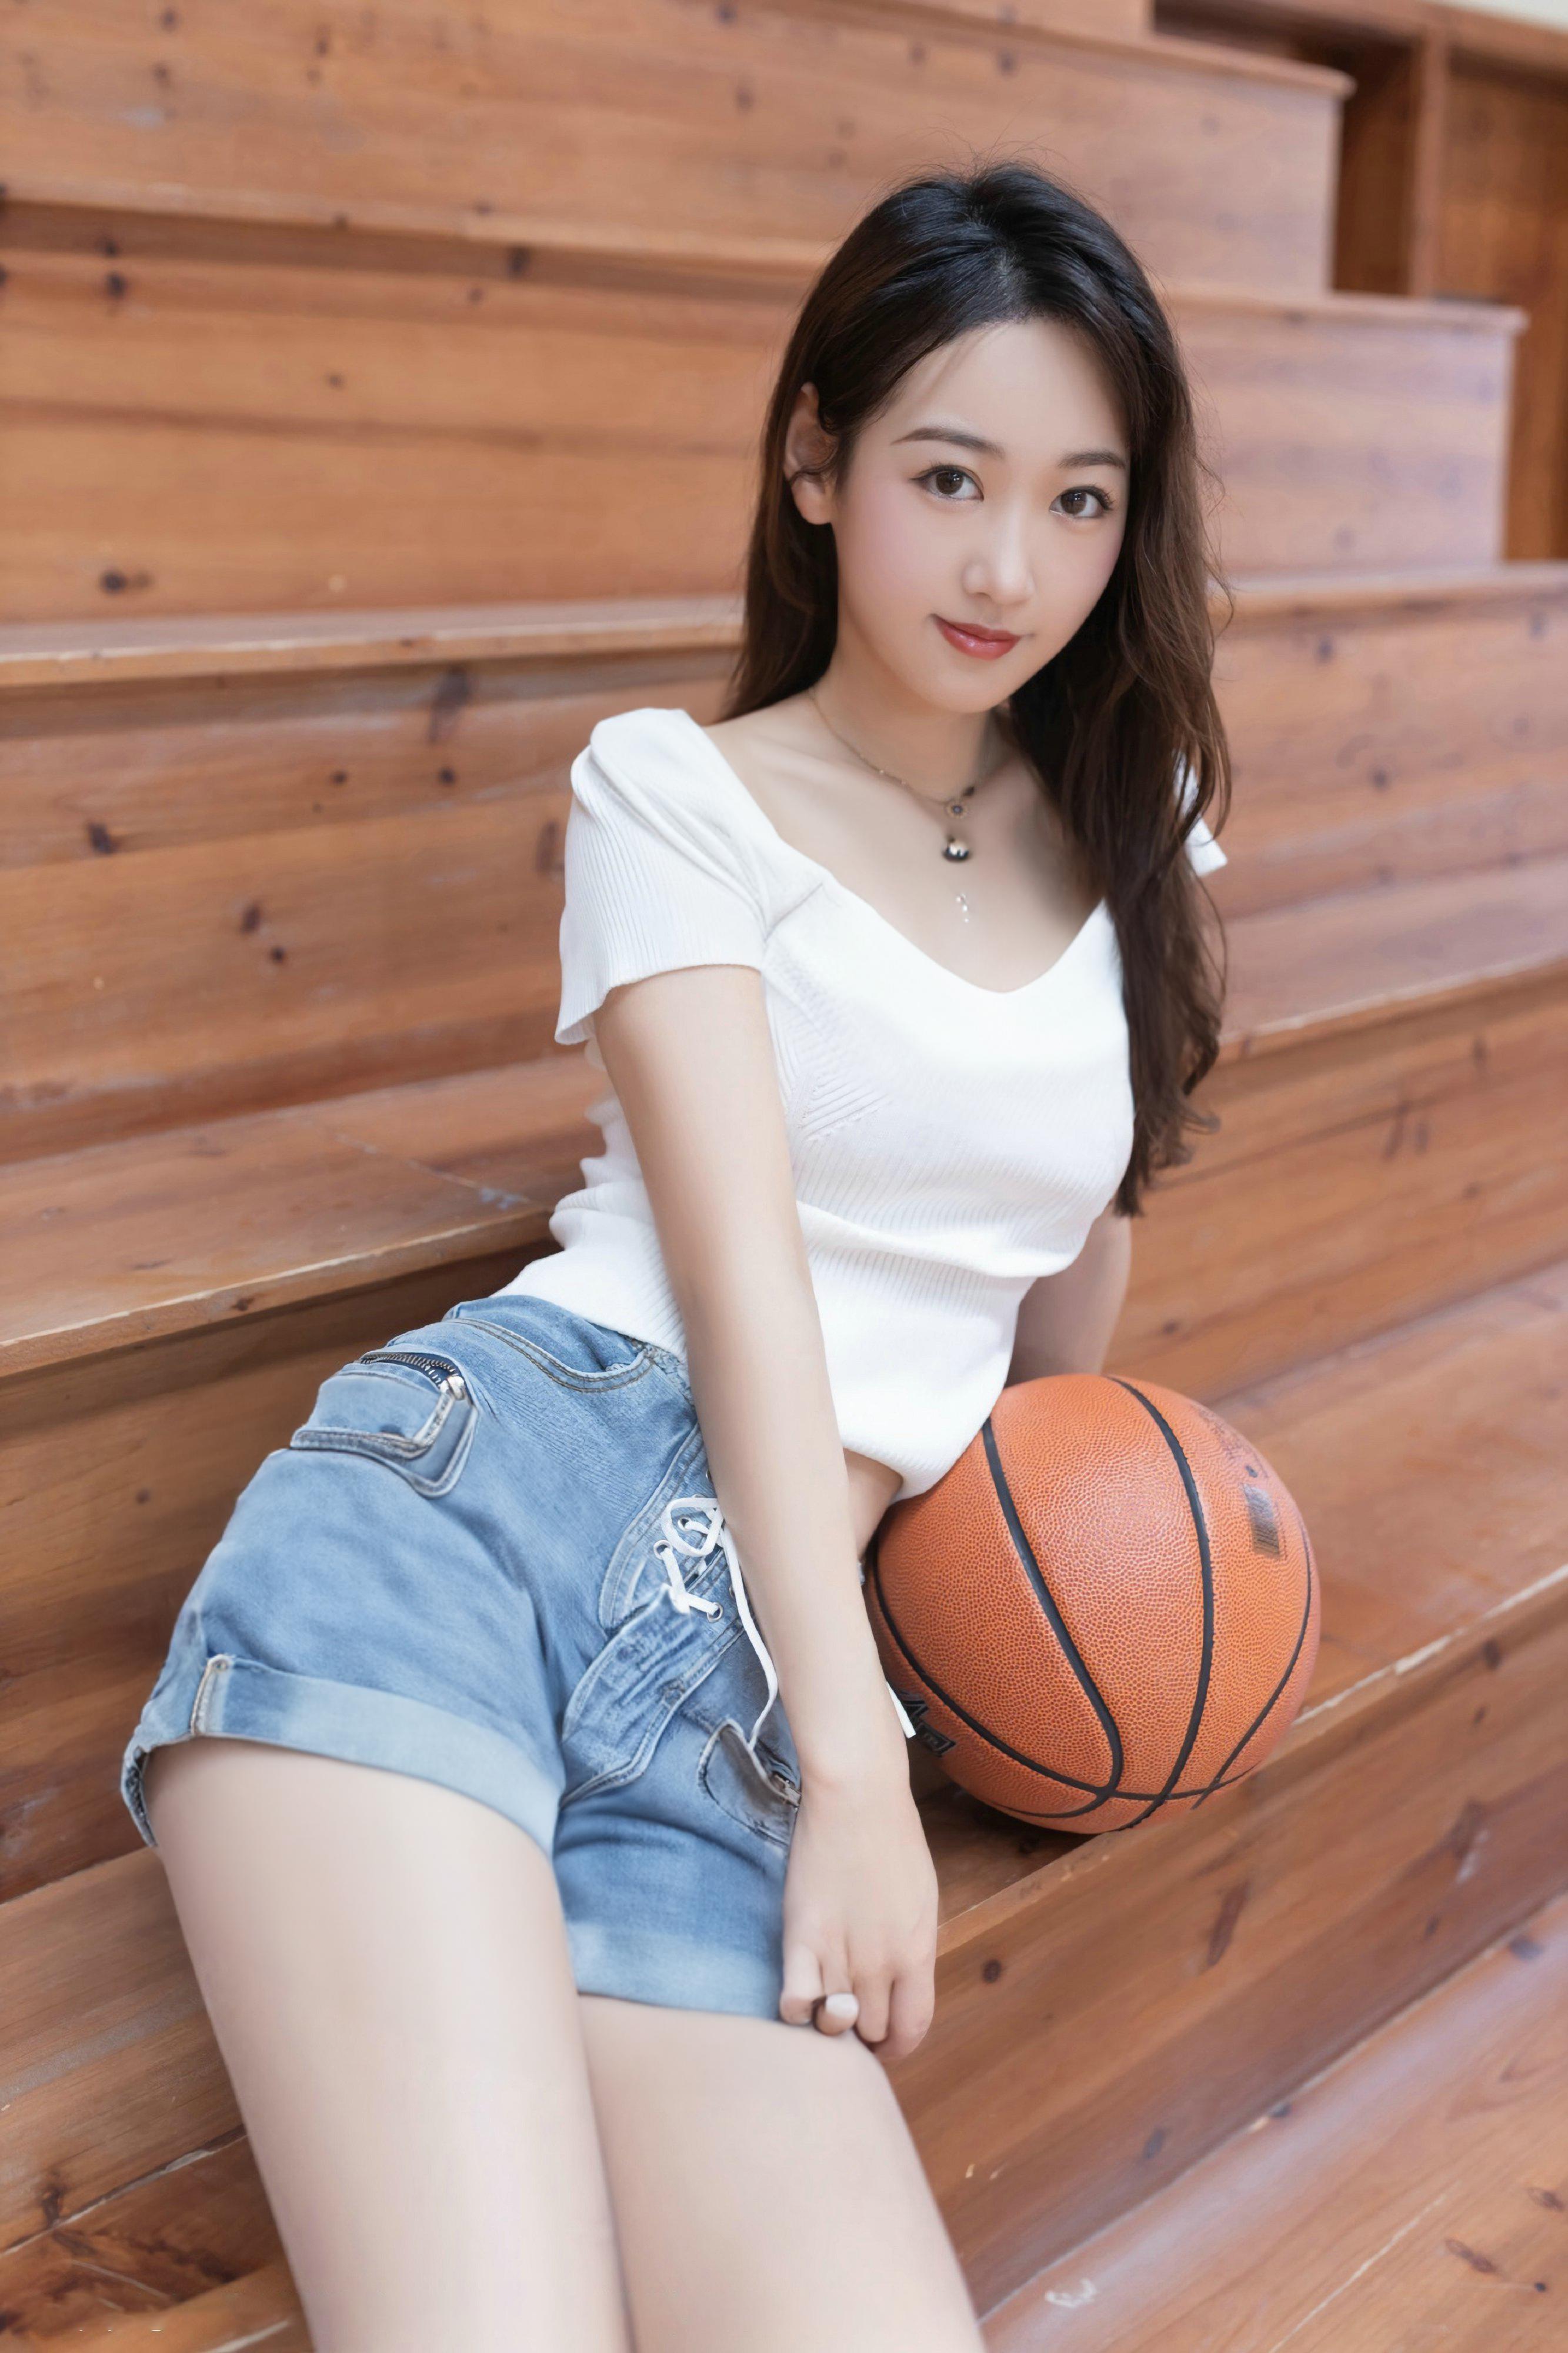 唐安琪——篮球宝贝「摄影评测与赏析」(10)